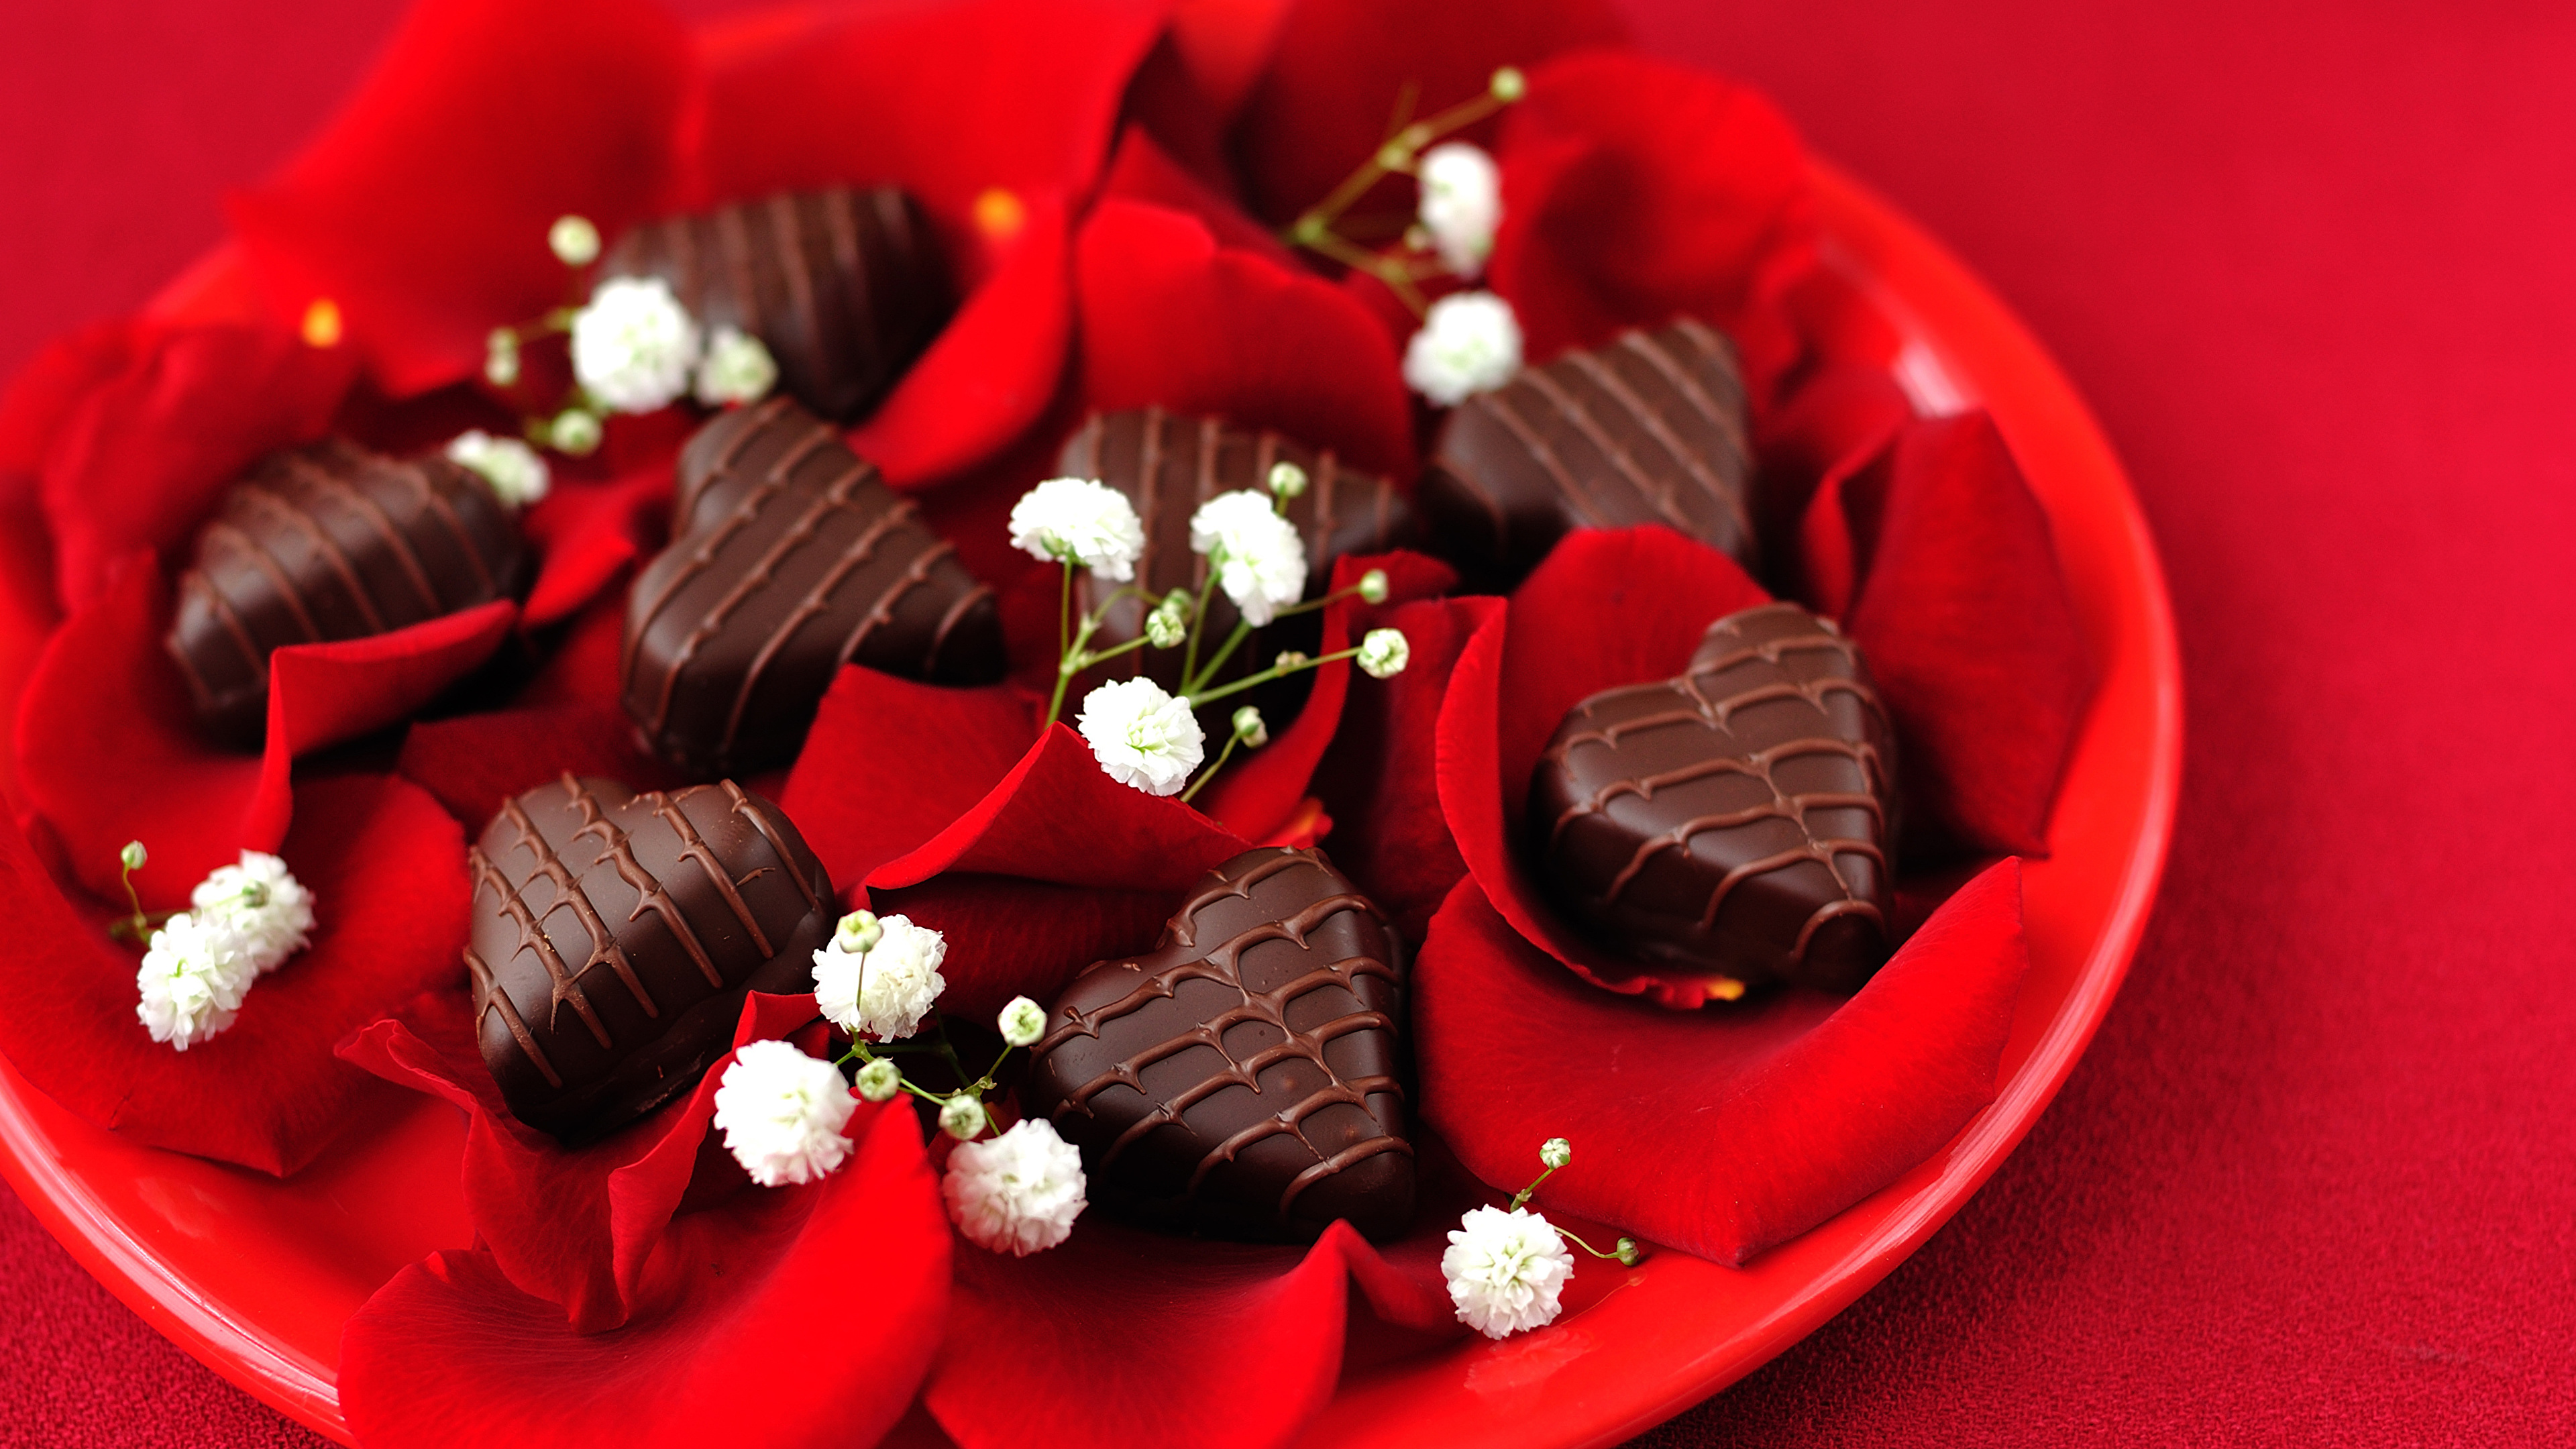 壁紙 3840x2160 バレンタインデー 菓子 キャンディ チョコレート 赤の背景 ハート 花びら 食品 ダウンロード 写真